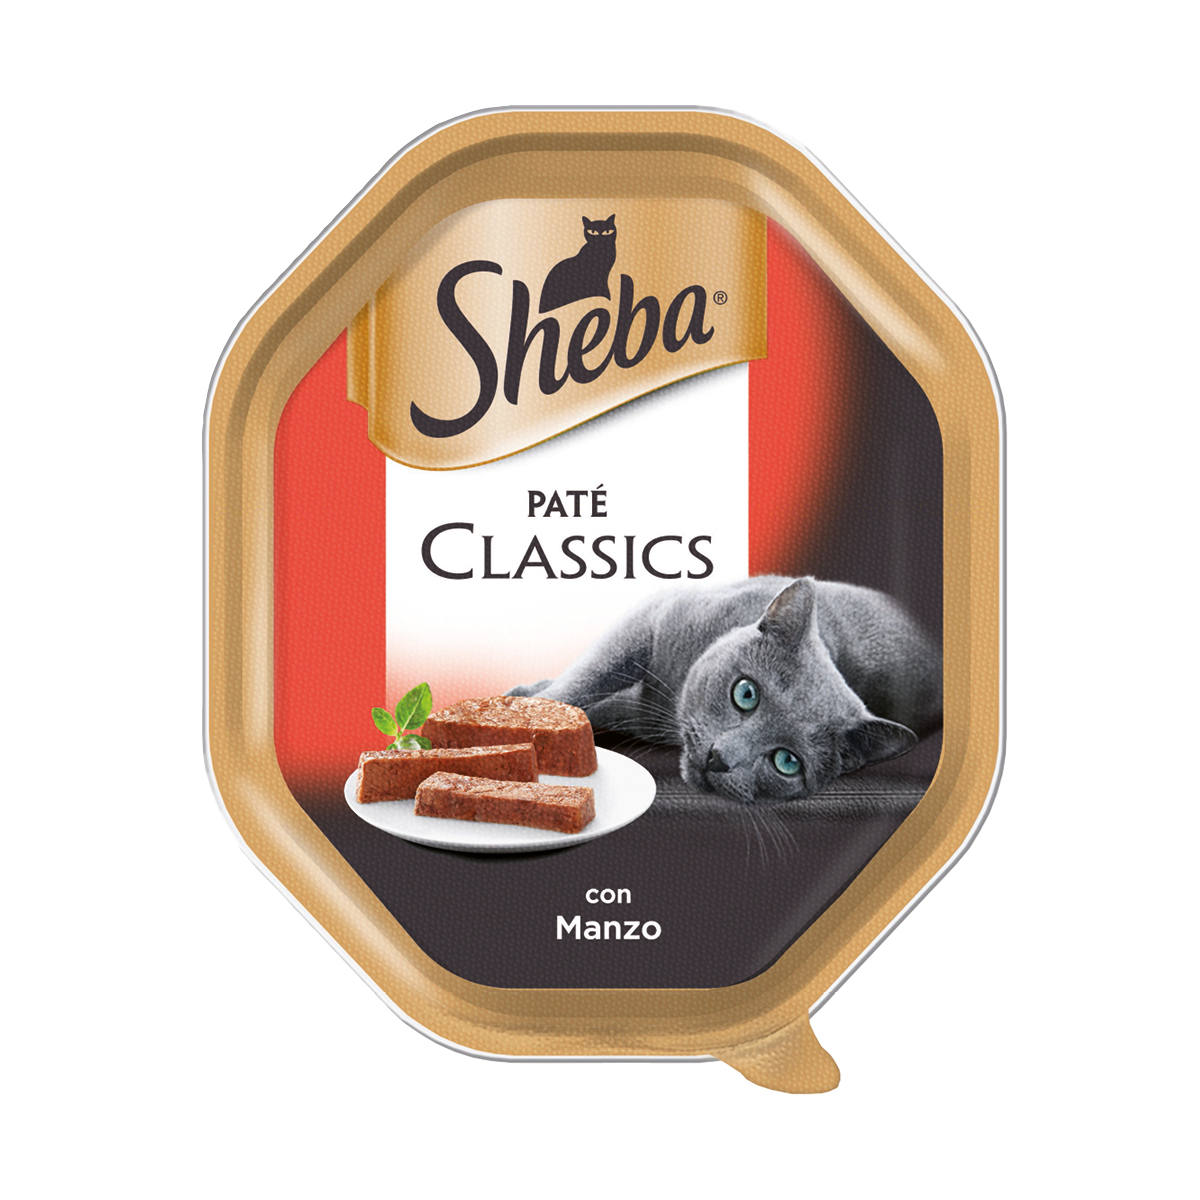 Sheba Paté Classics 85g